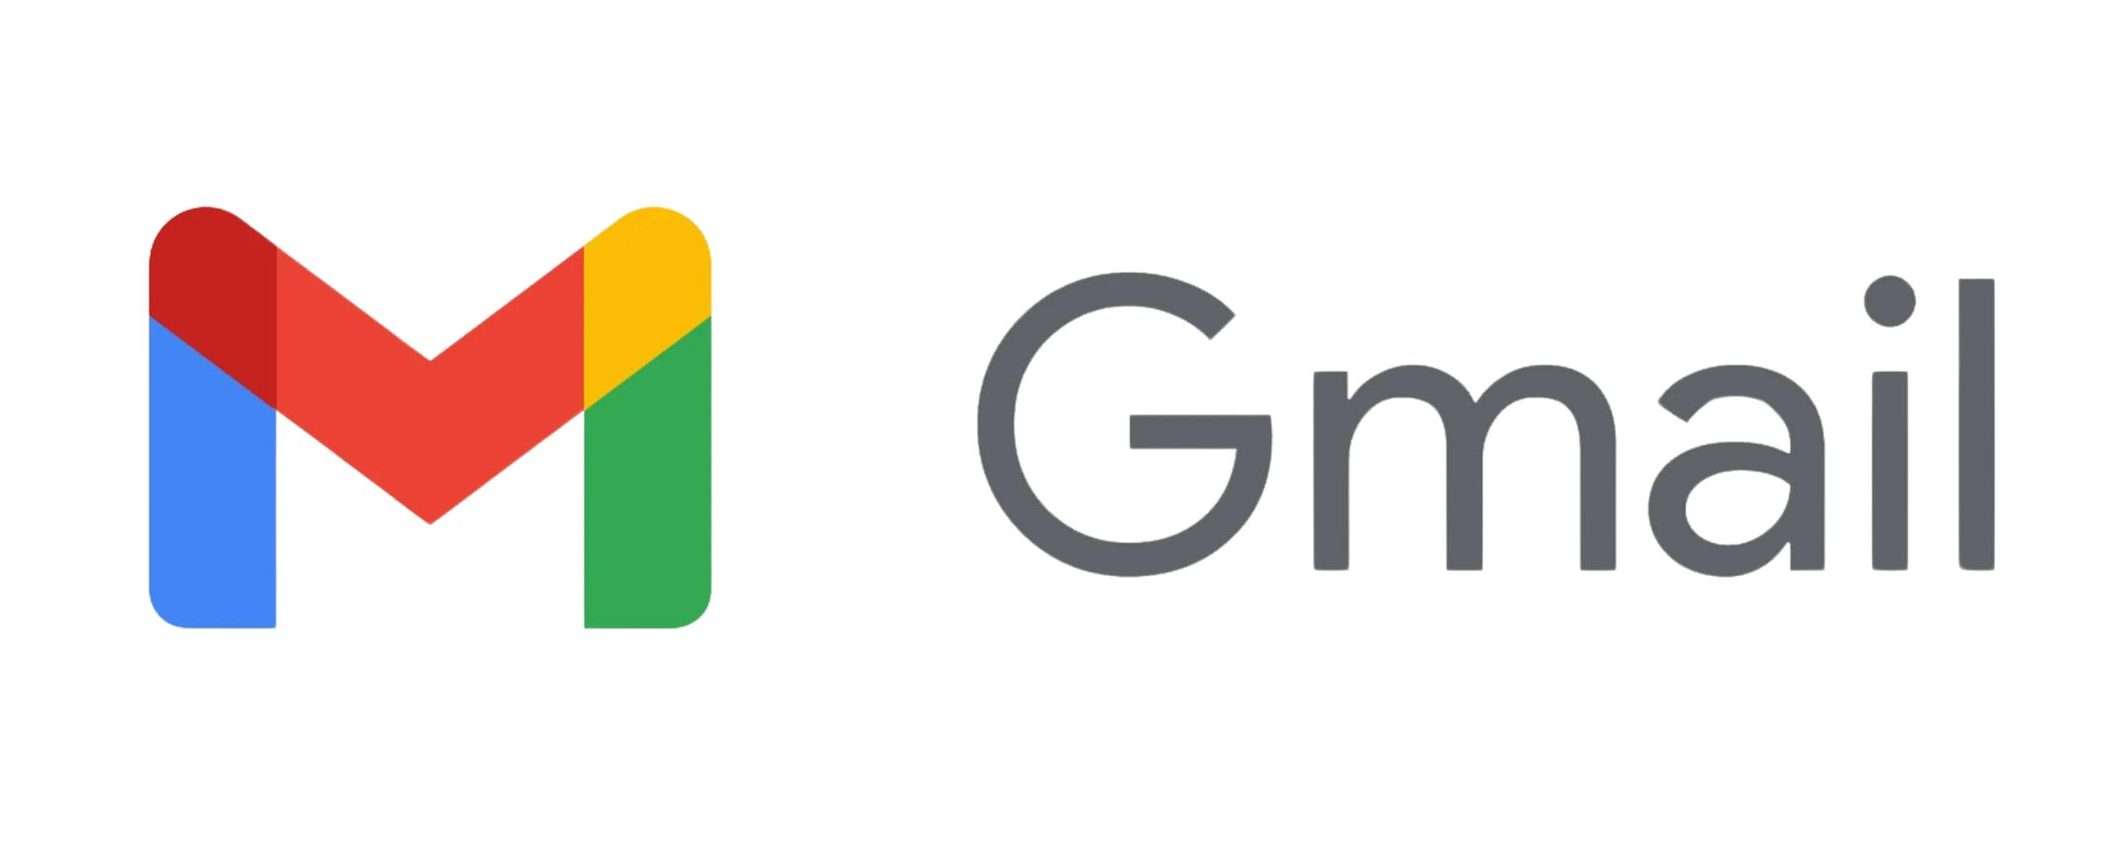 Gmail per Android: arriva una nuova funzione di risposta rapida